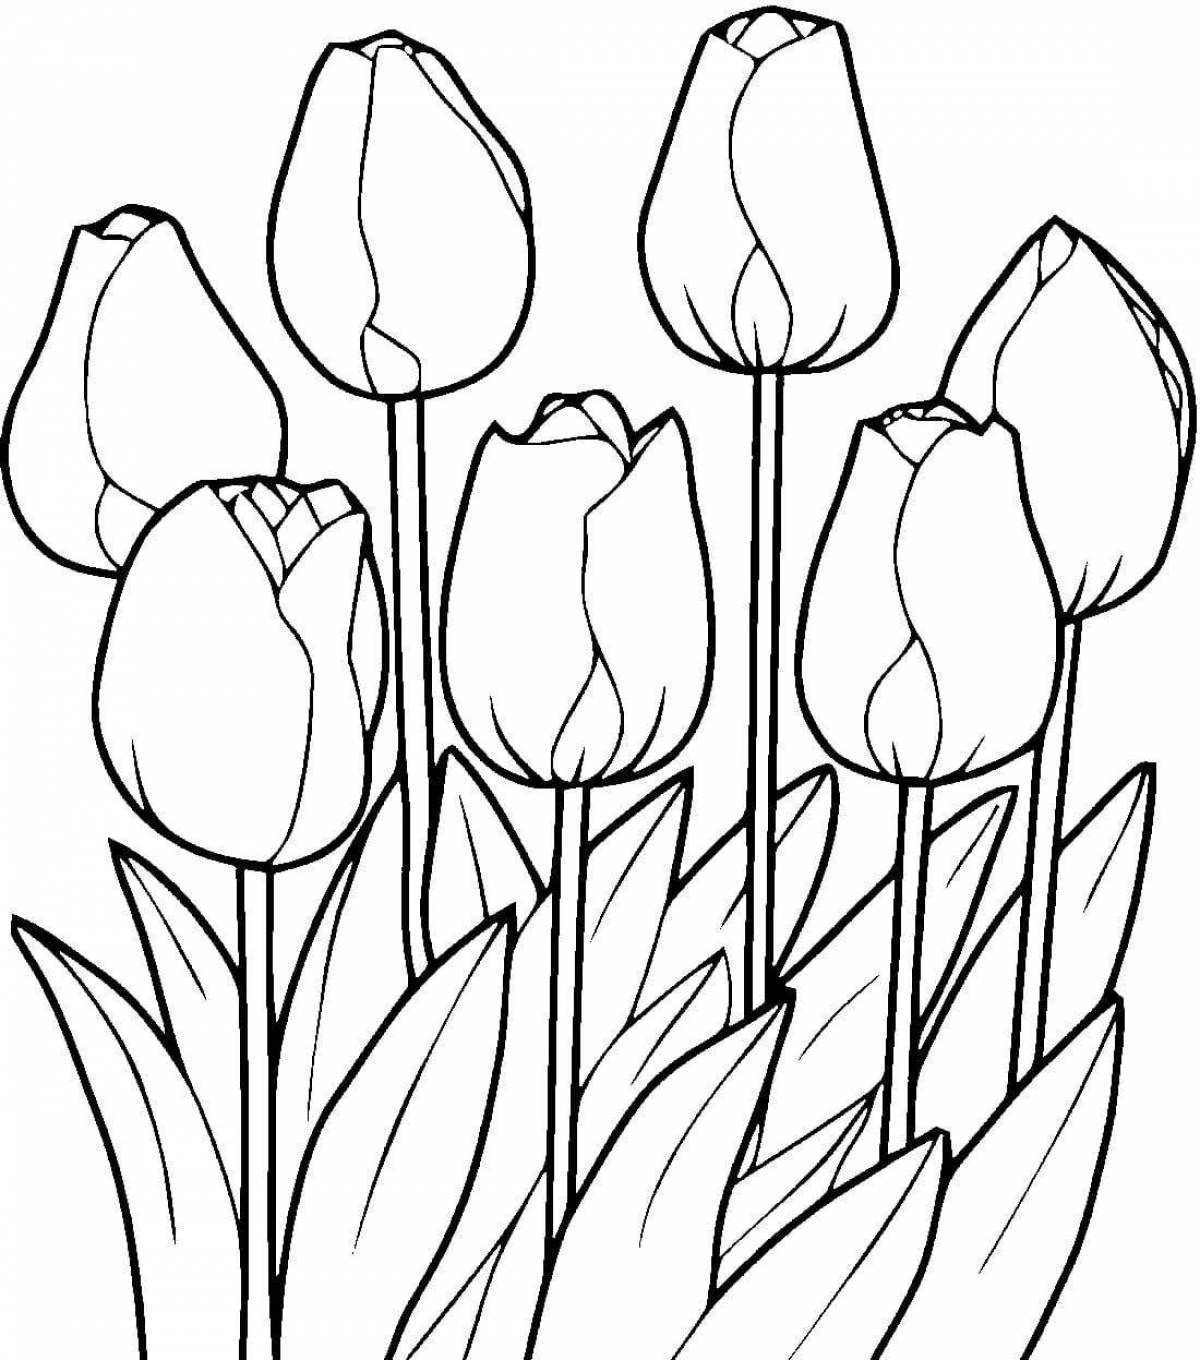 Раскраска ярко окрашенные весенние тюльпаны